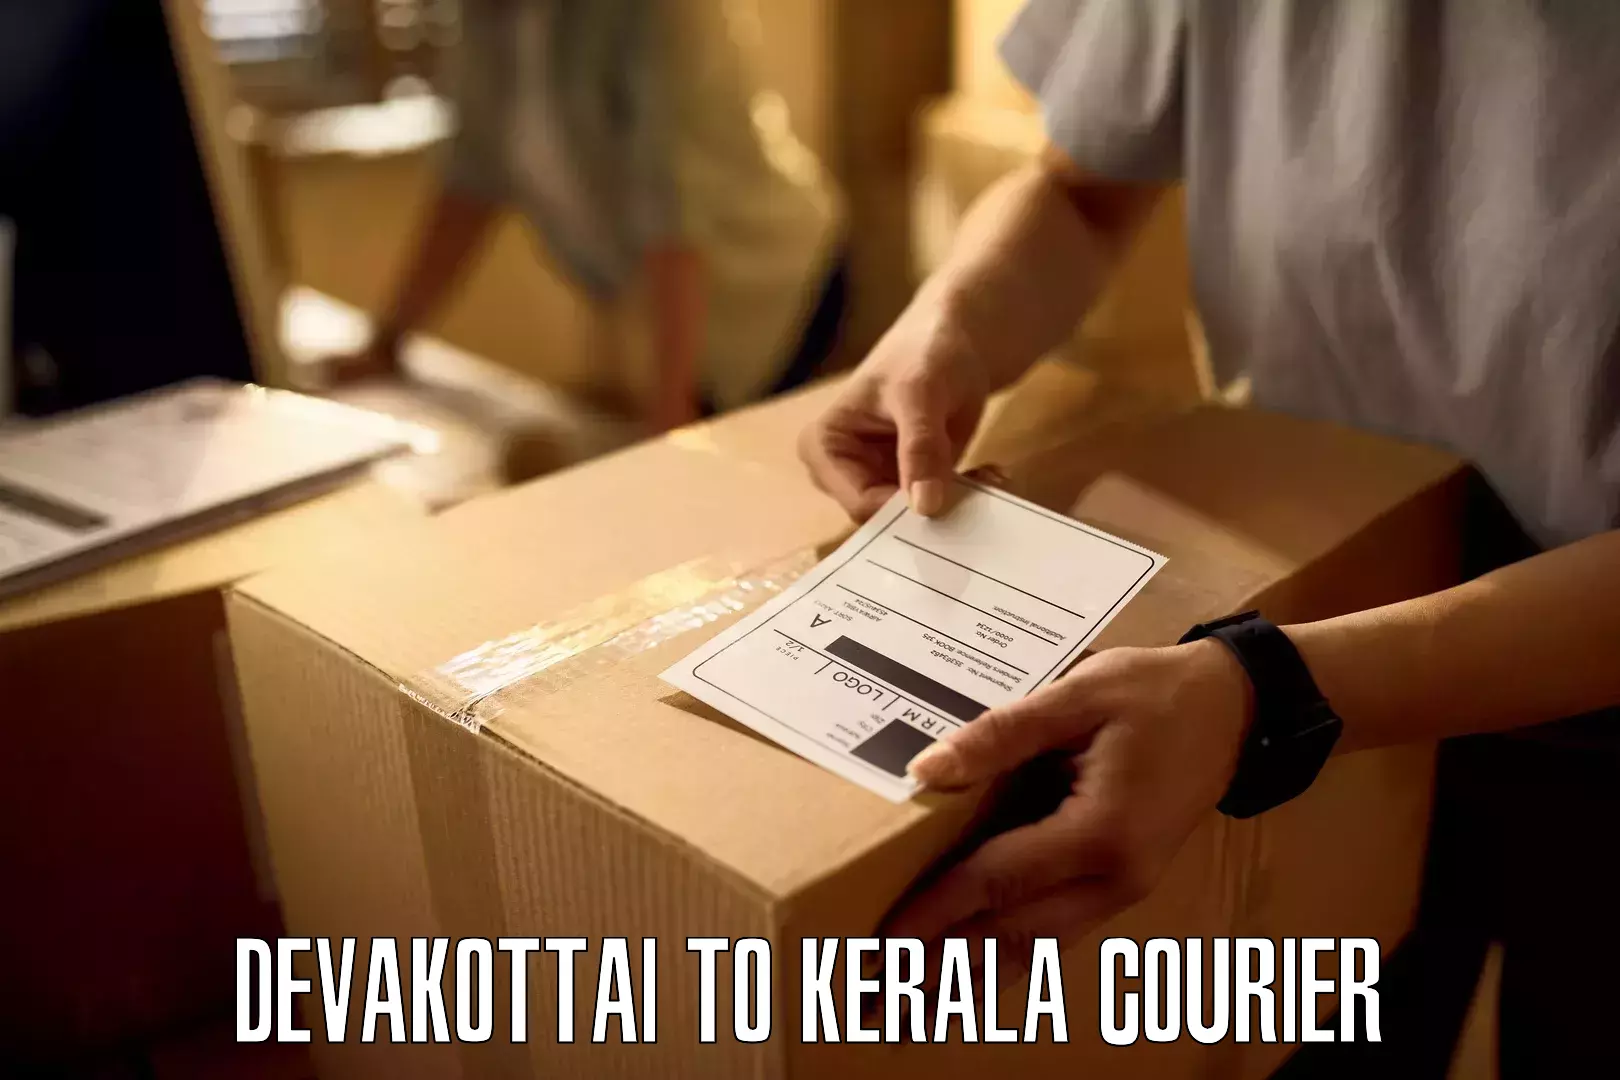 International parcel service Devakottai to Karunagappally